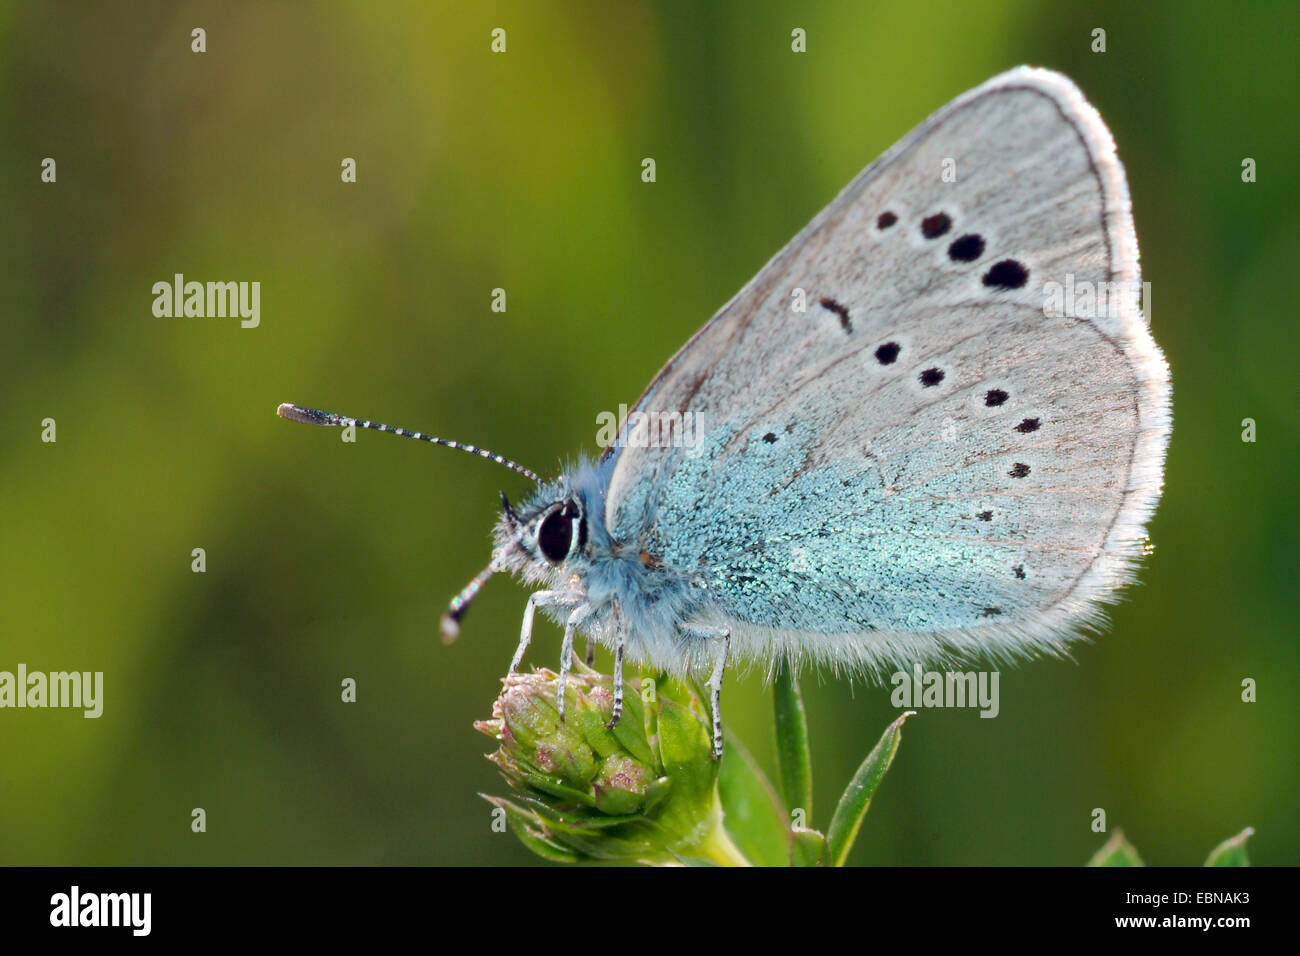 Face inférieure vert bleu (Glaucopsyche alexis), sur des boutons de fleurs, Allemagne Banque D'Images